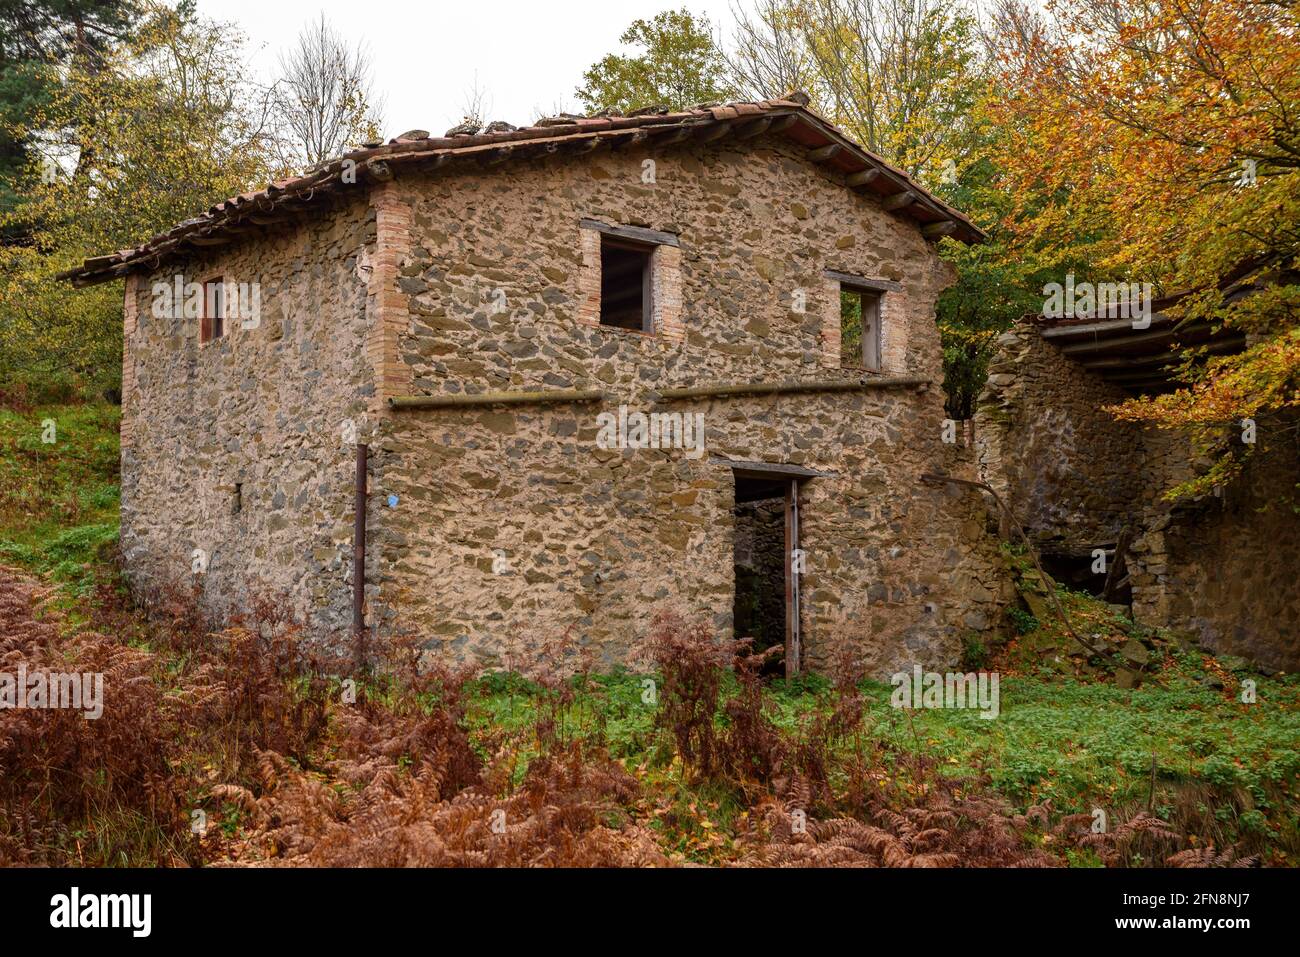 Casa d'Aiats, sul sentiero fino a Pla d'Aiats, in autunno (Osona, Catalogna, Spagna) ESP: Casa de Aiats, en el sendero de subida al Pla d'Aiats Foto Stock